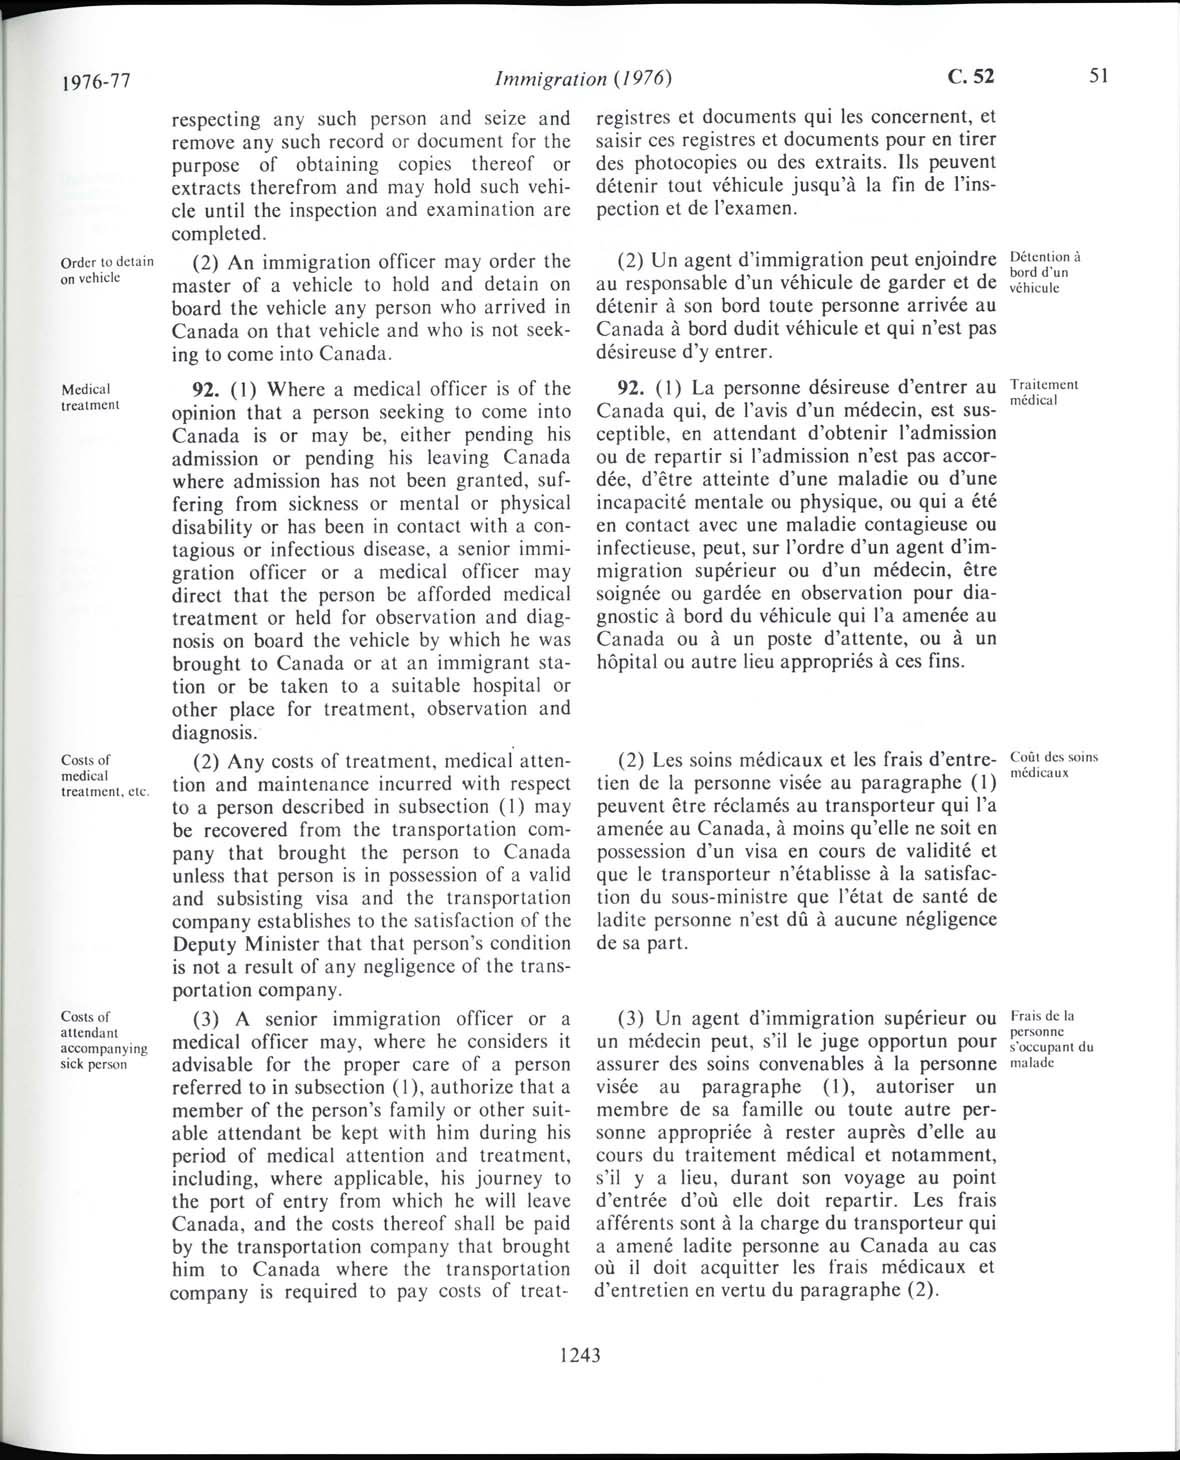 Page 1243 Loi sur l’immigration de 1976